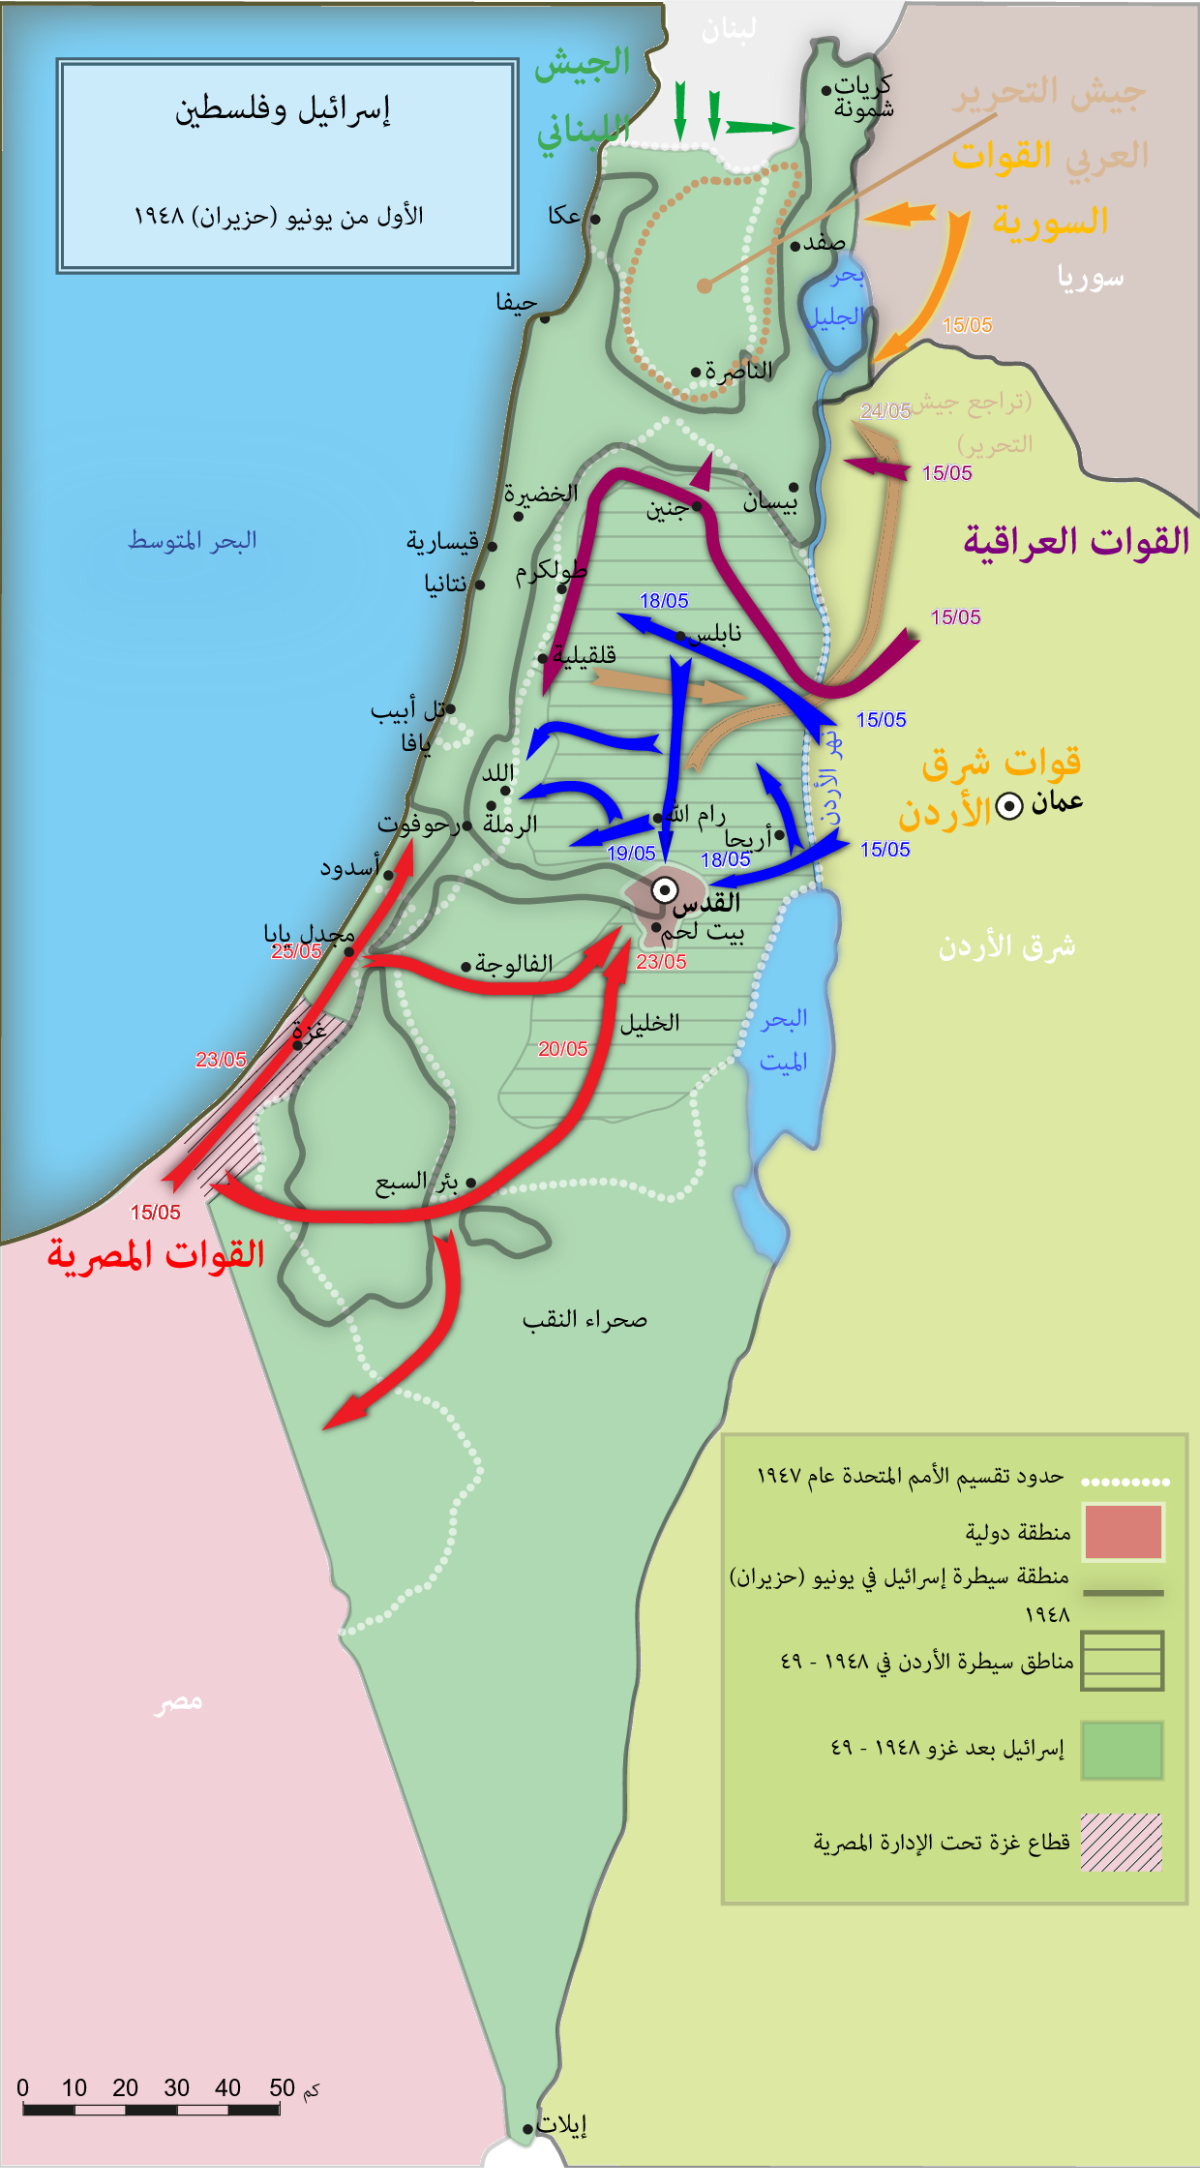 حرب فلسطين 1948 - ويكيبيديا